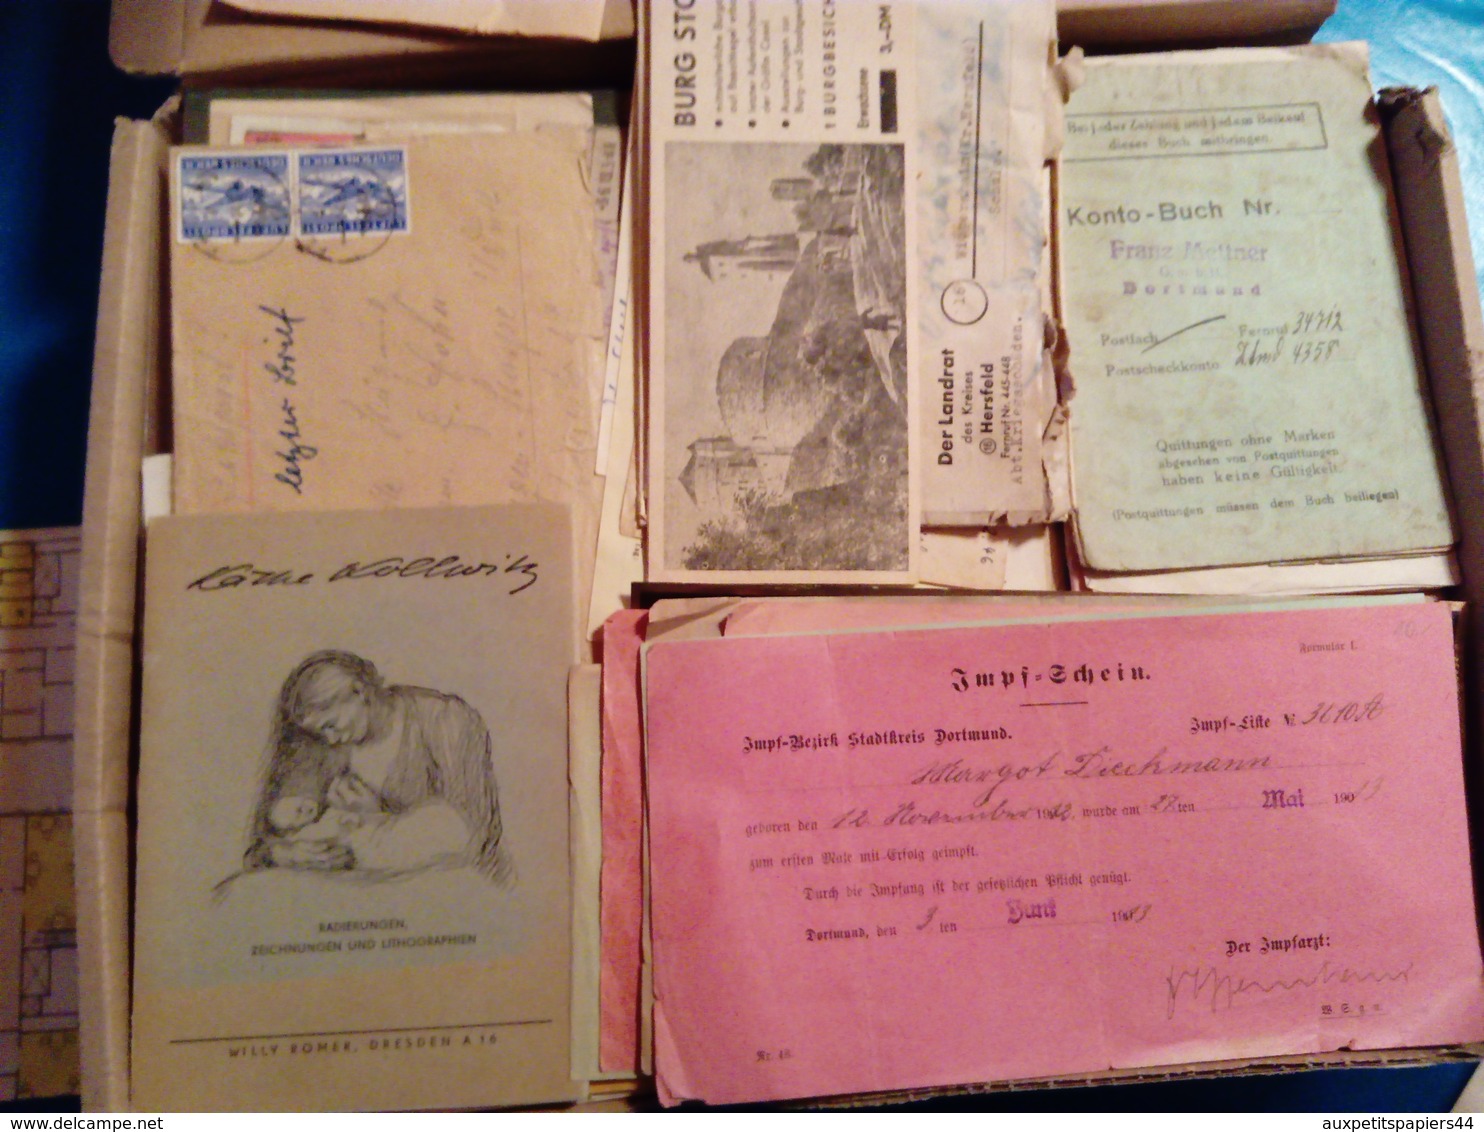 Lot 3.5 Kg Articles, Journaux & Courriers Divers Franco-Allemands autour de la Guerre 1939-45 Hitler, Lyon-Soir, Nazi